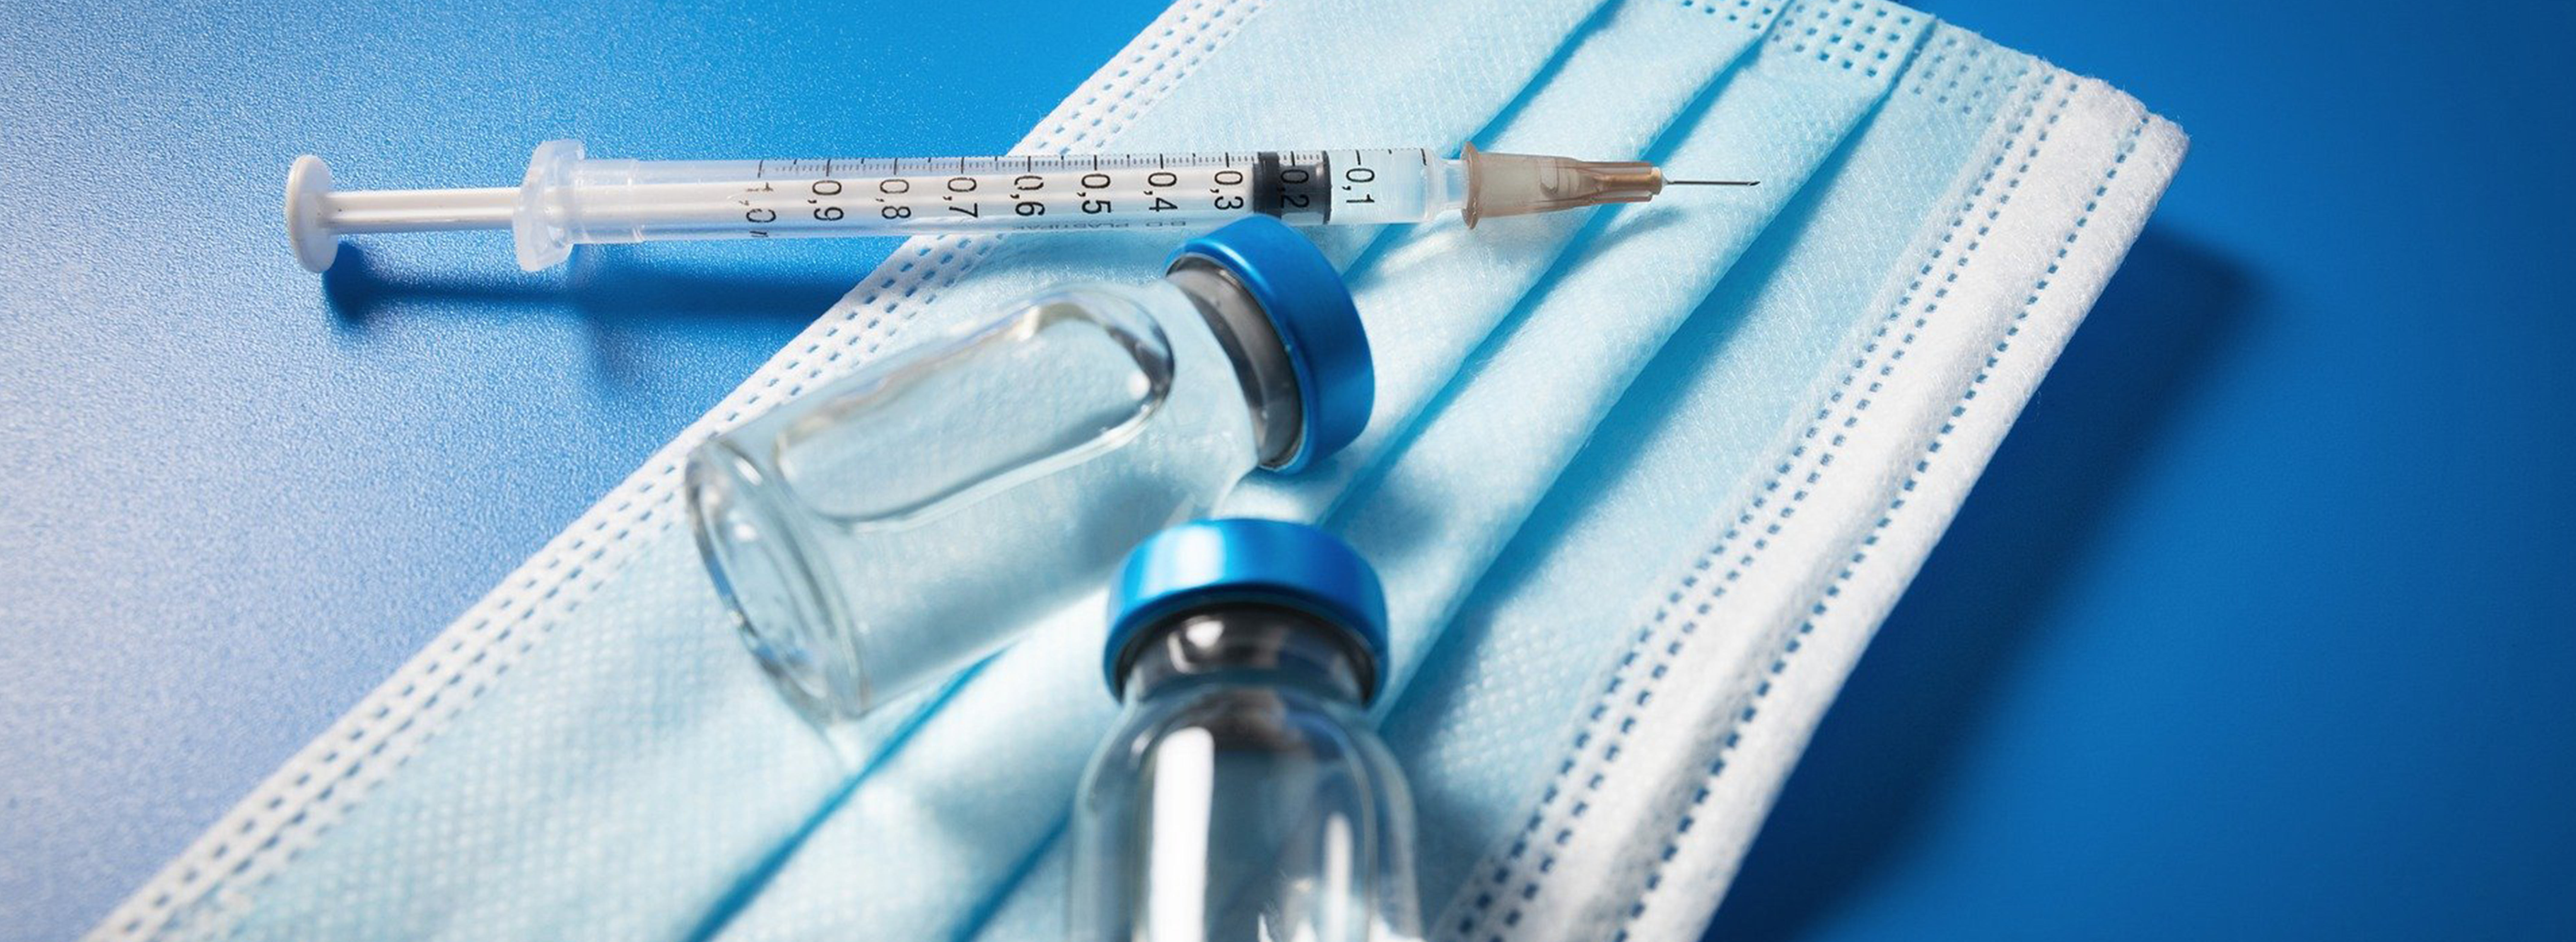 Das Bild zeigt eine Impfspritze, Impfmittel und einen Mundschutz